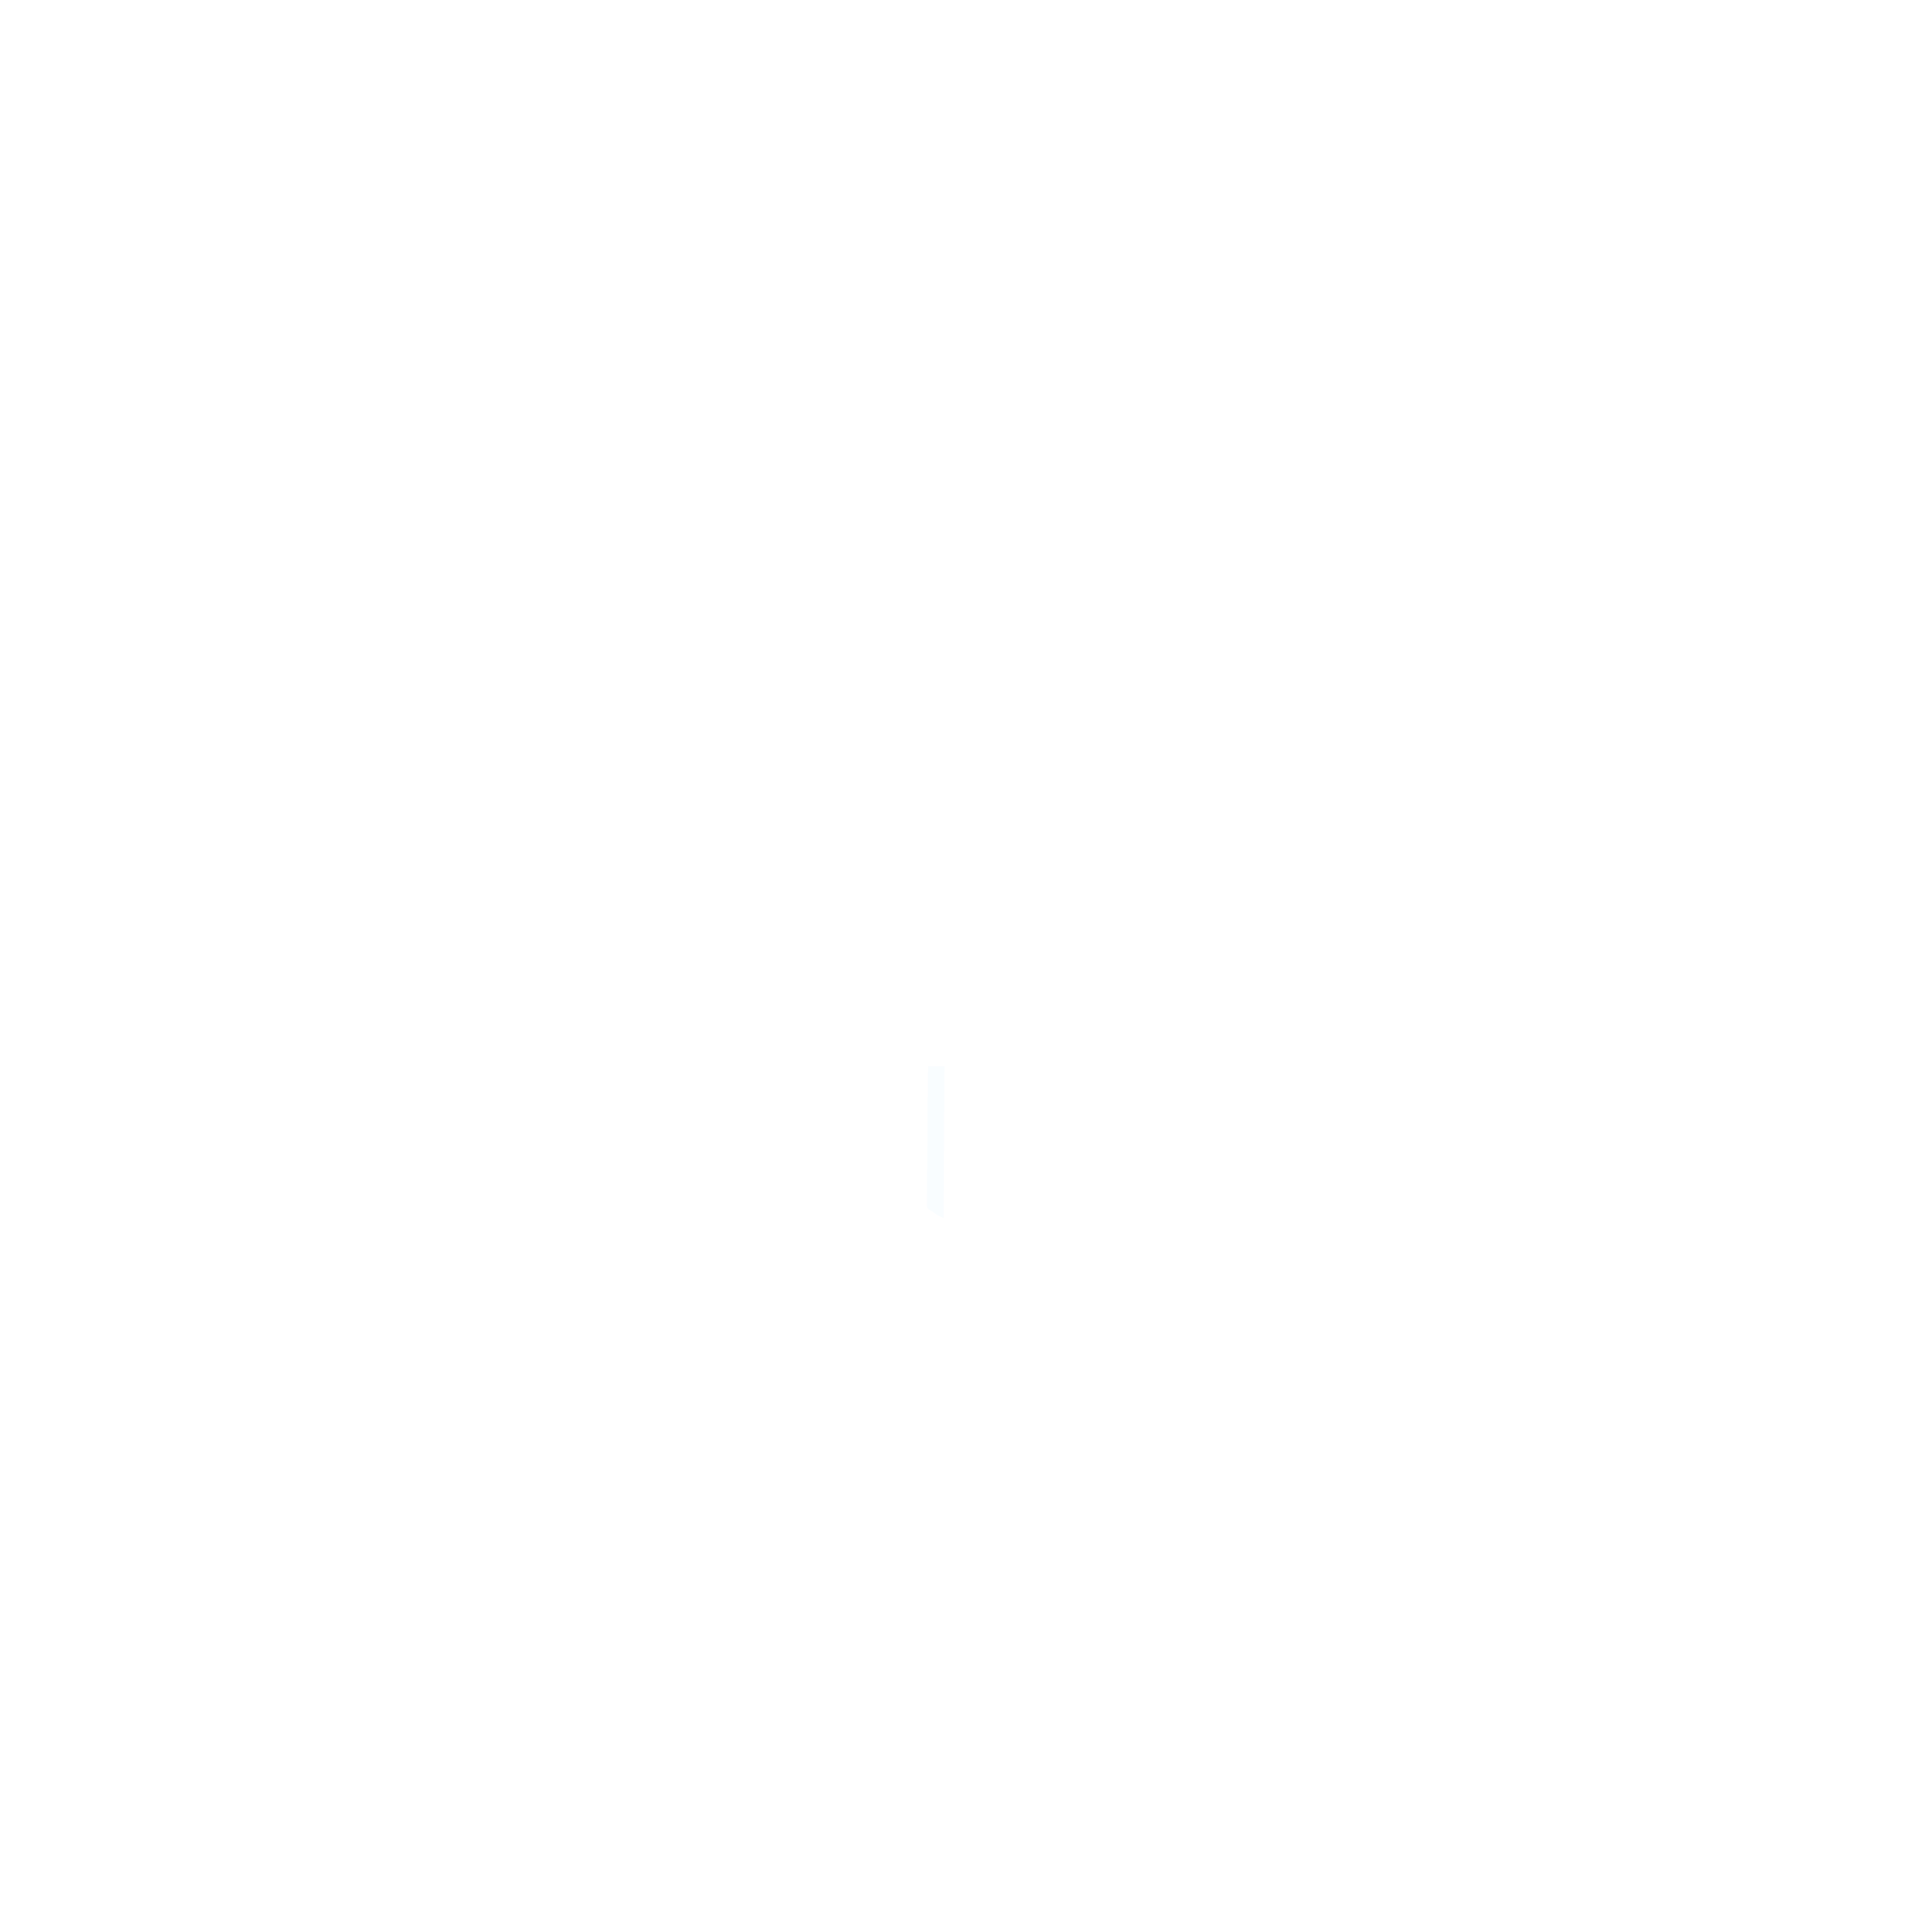 Troop 11